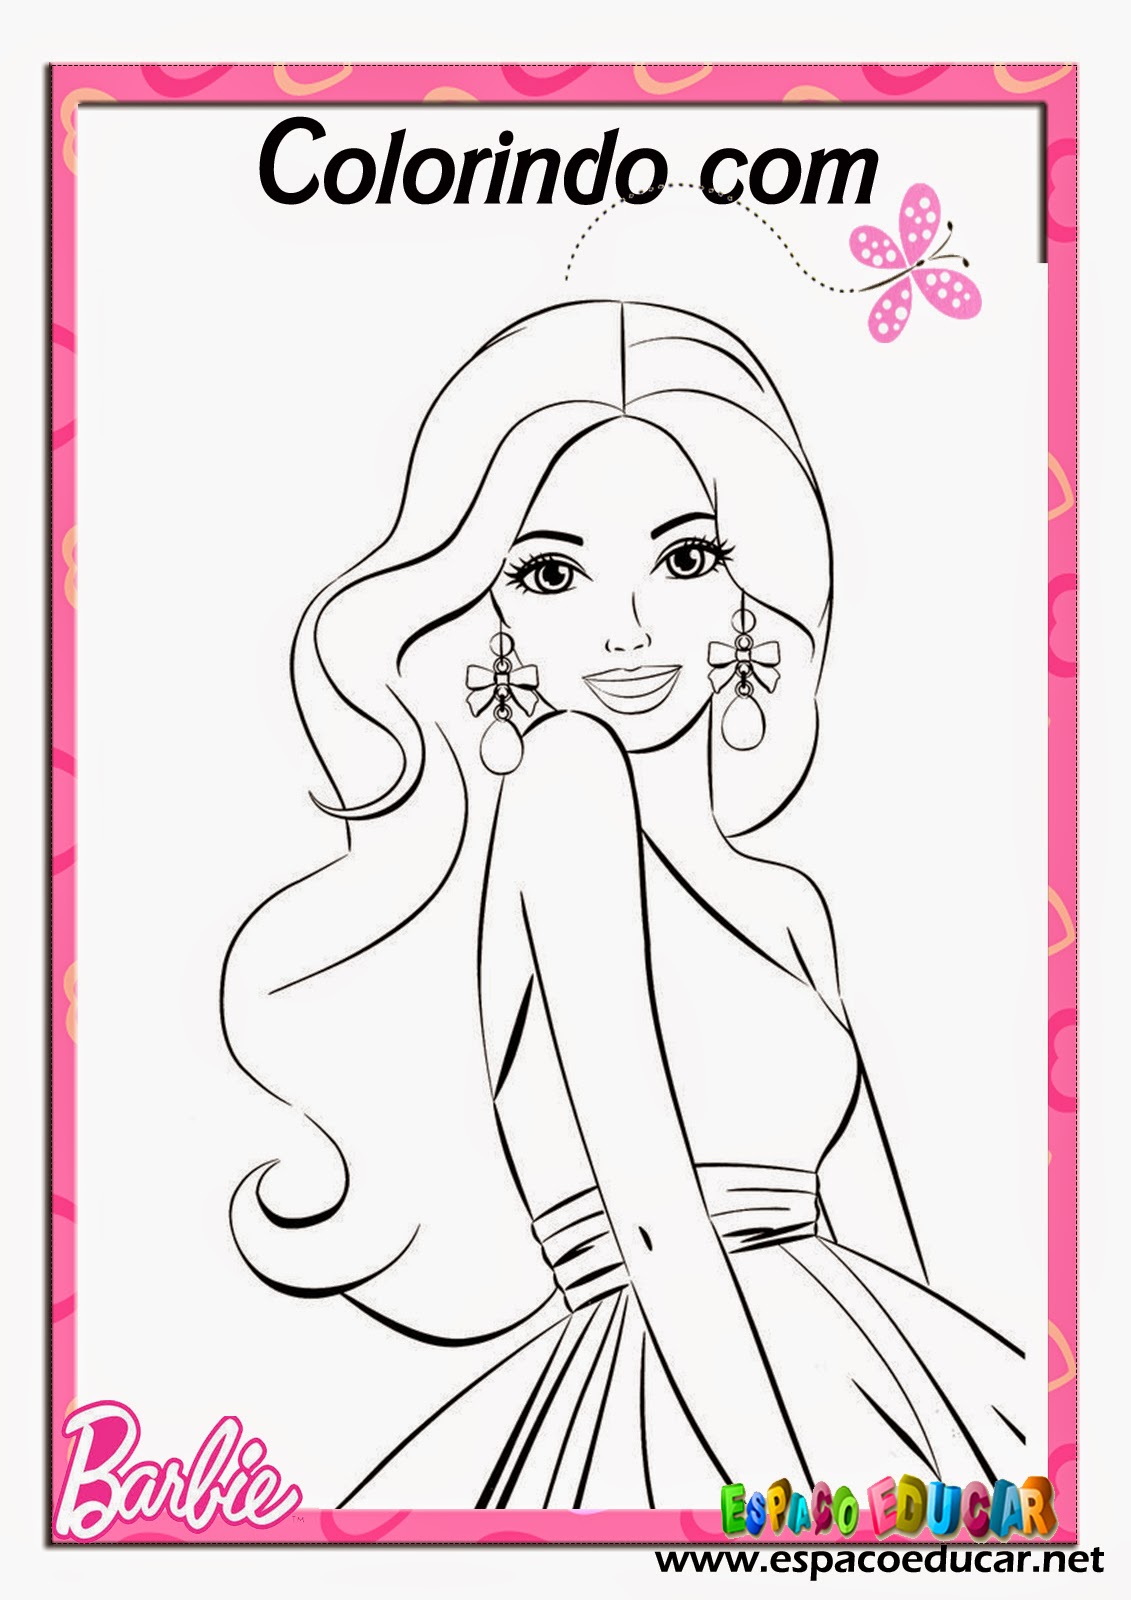 Desenhos de Barbie para colorir, jogos de pintar e imprimir